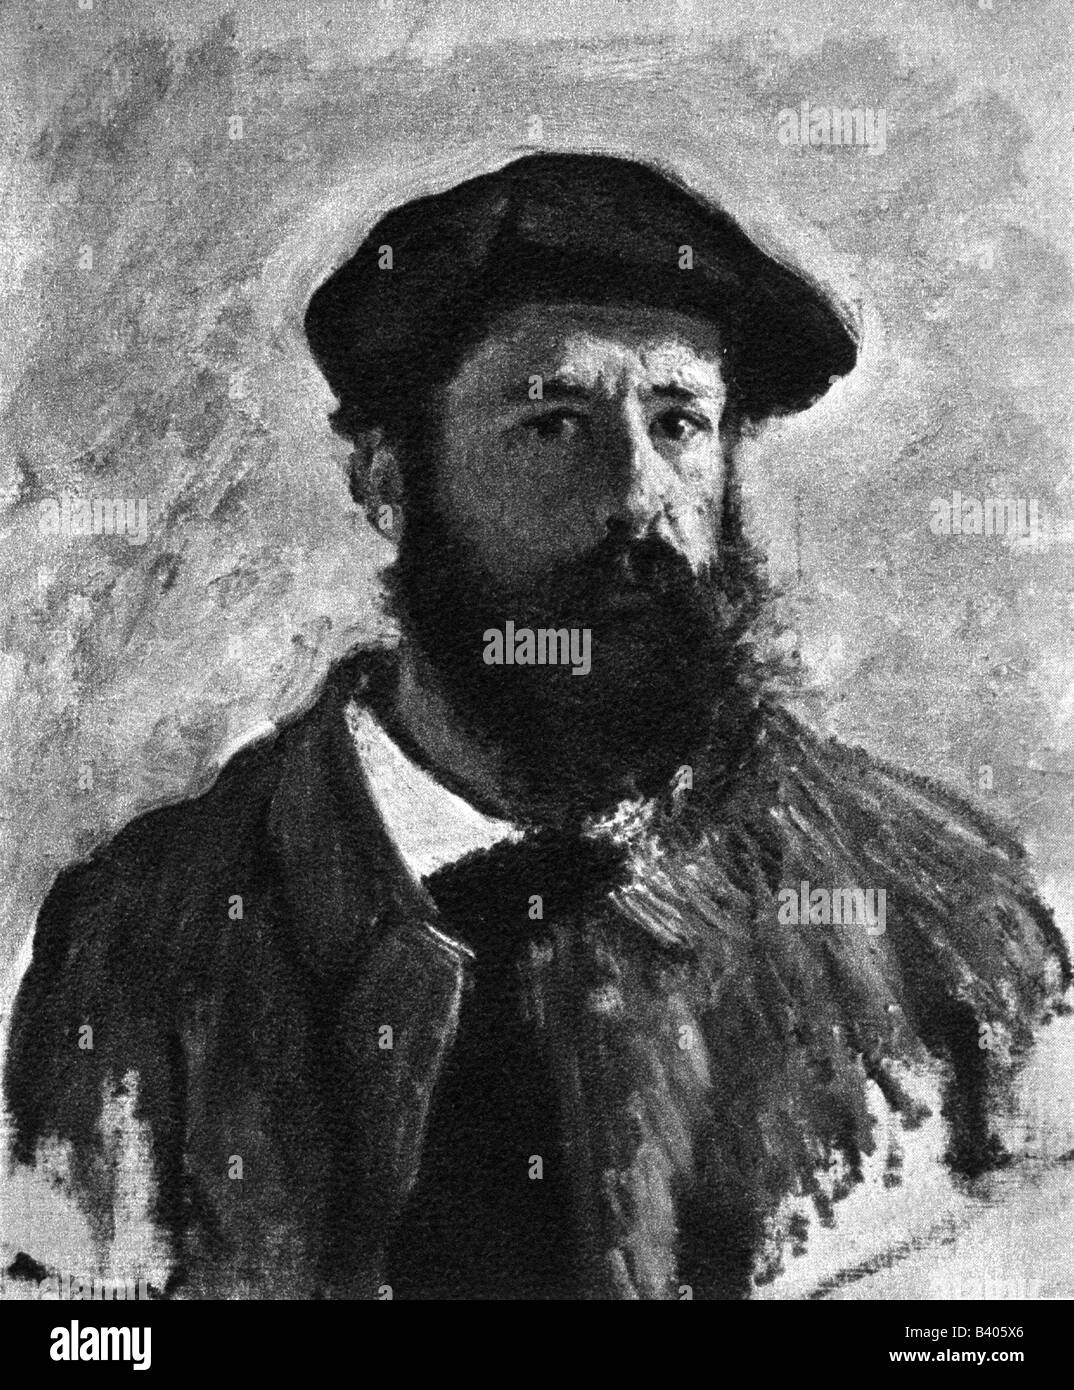 Monet, Claude, 14.2.1840 - 6.12.1926, French artist, portrait, self portrait, painting, 1886, Stock Photo